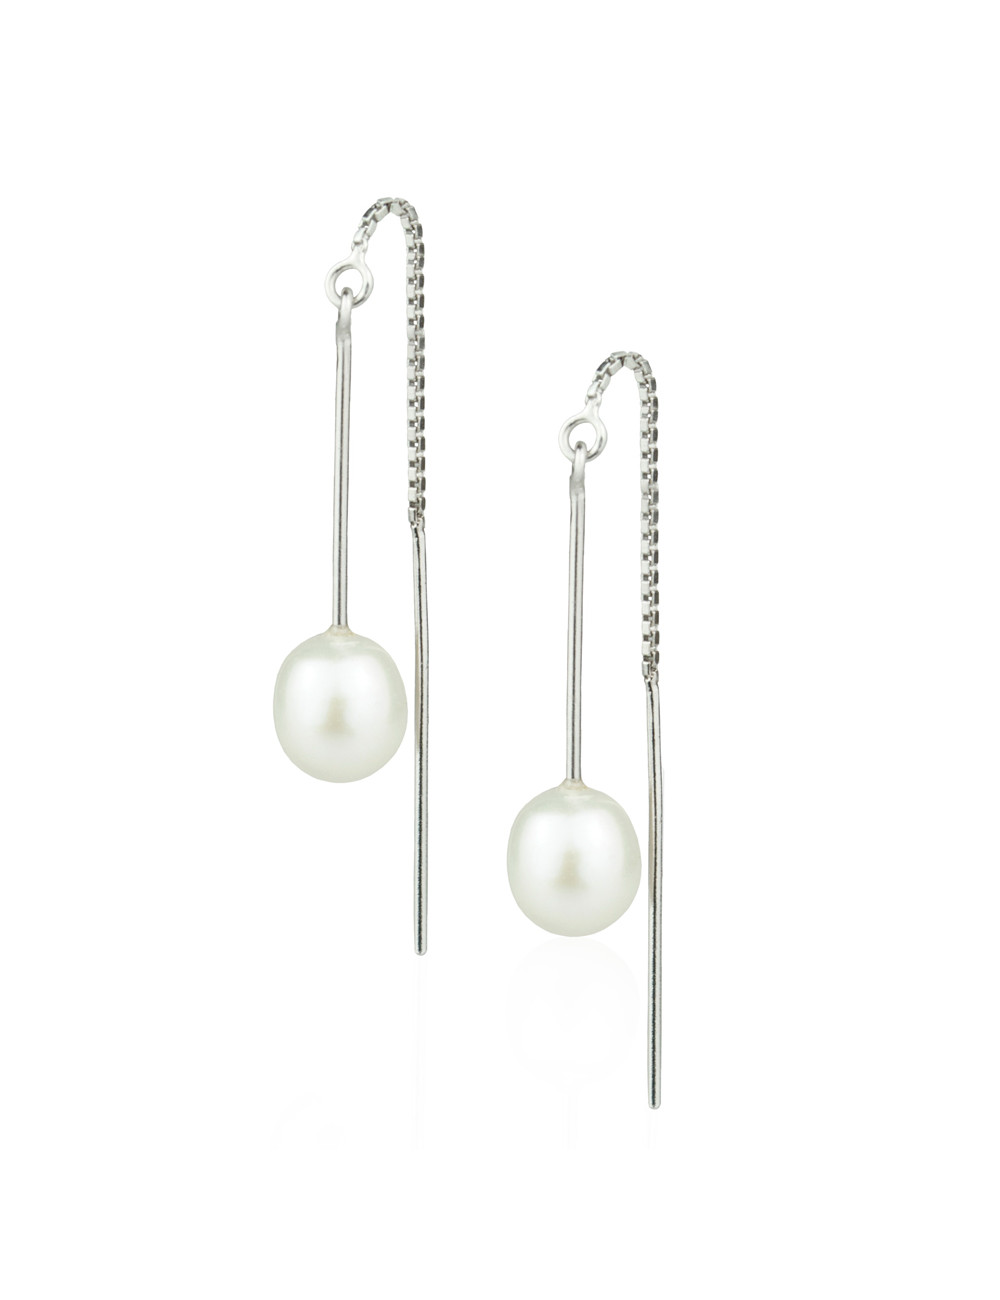 Srebrne wiszące kolczyki ze średniej wielkości owalnymi, białymi perłami KW7080S